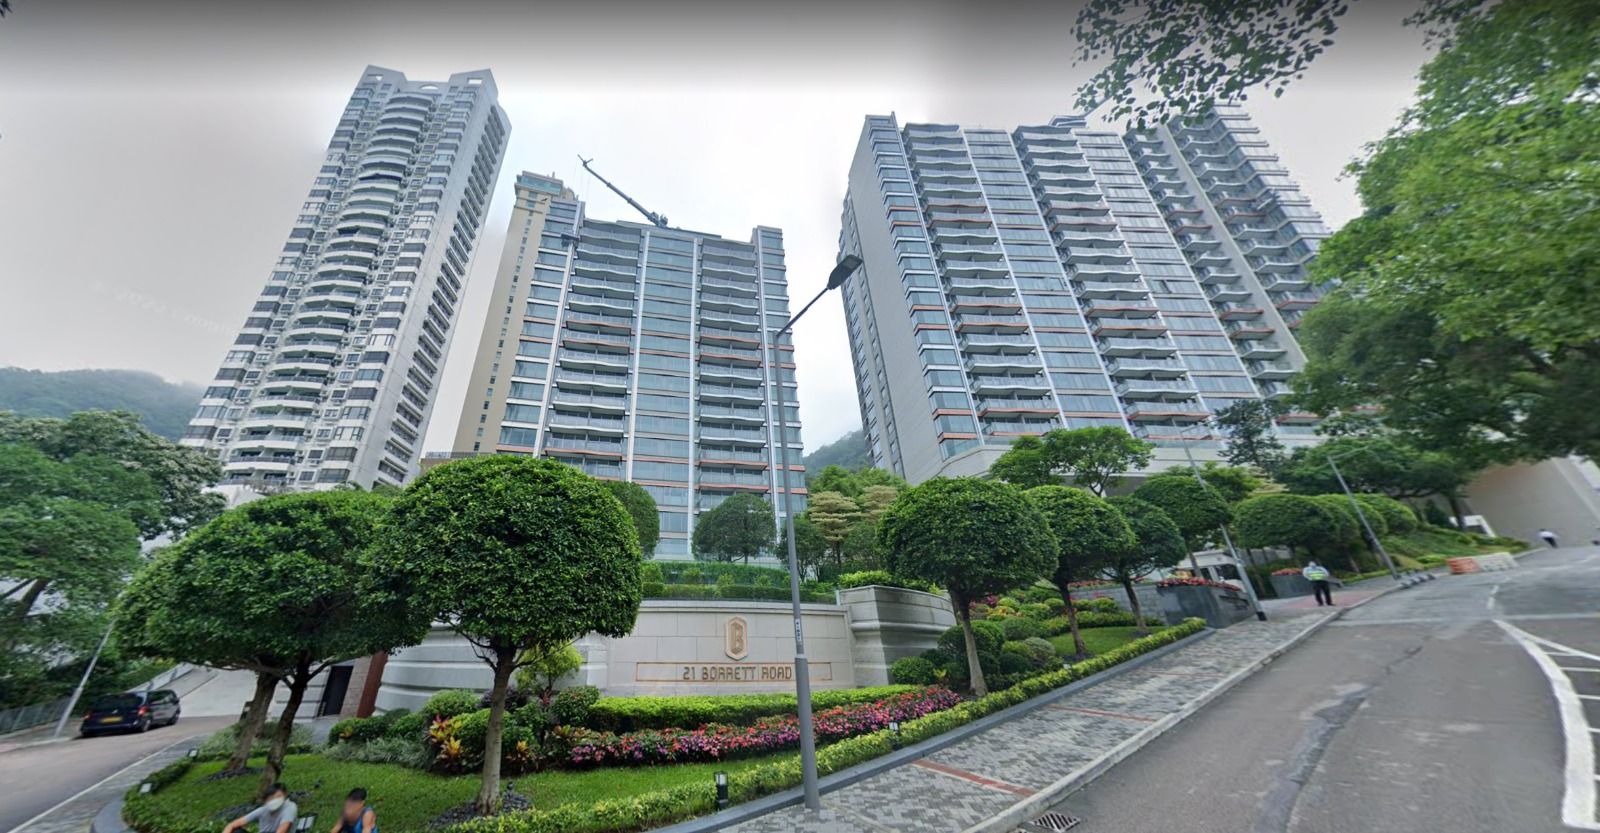 亞洲樓王｜長實波老道21號逾207億售予新加坡華瑞資本 估計收益63億元